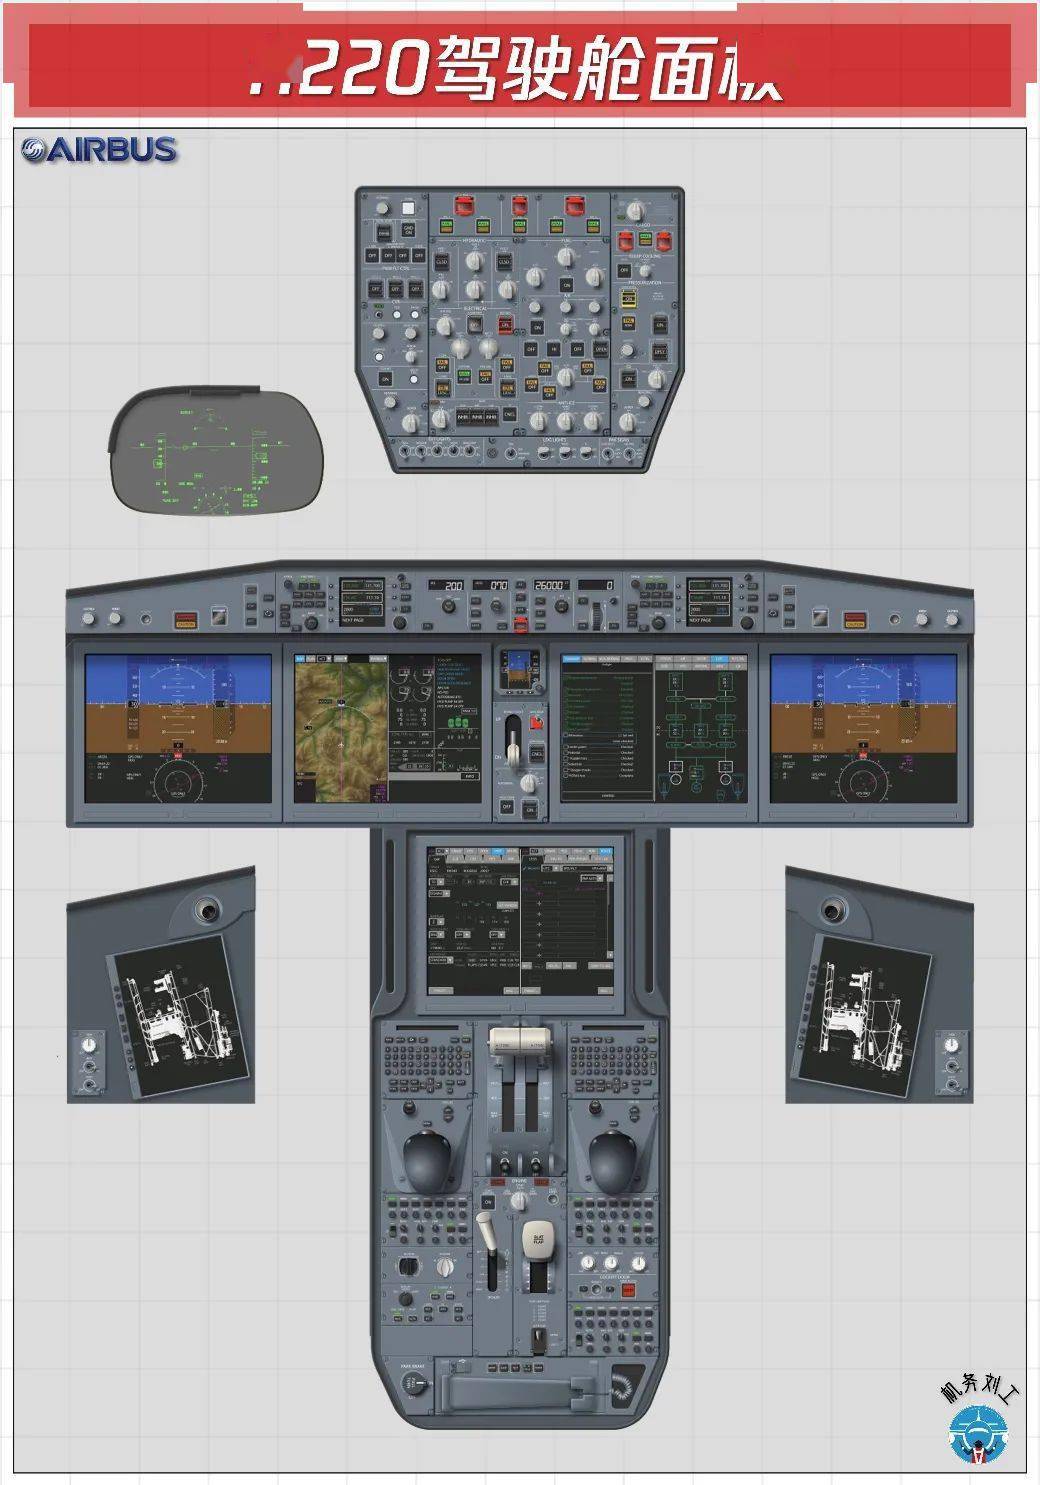 素材︱空客飞机驾驶舱面板图